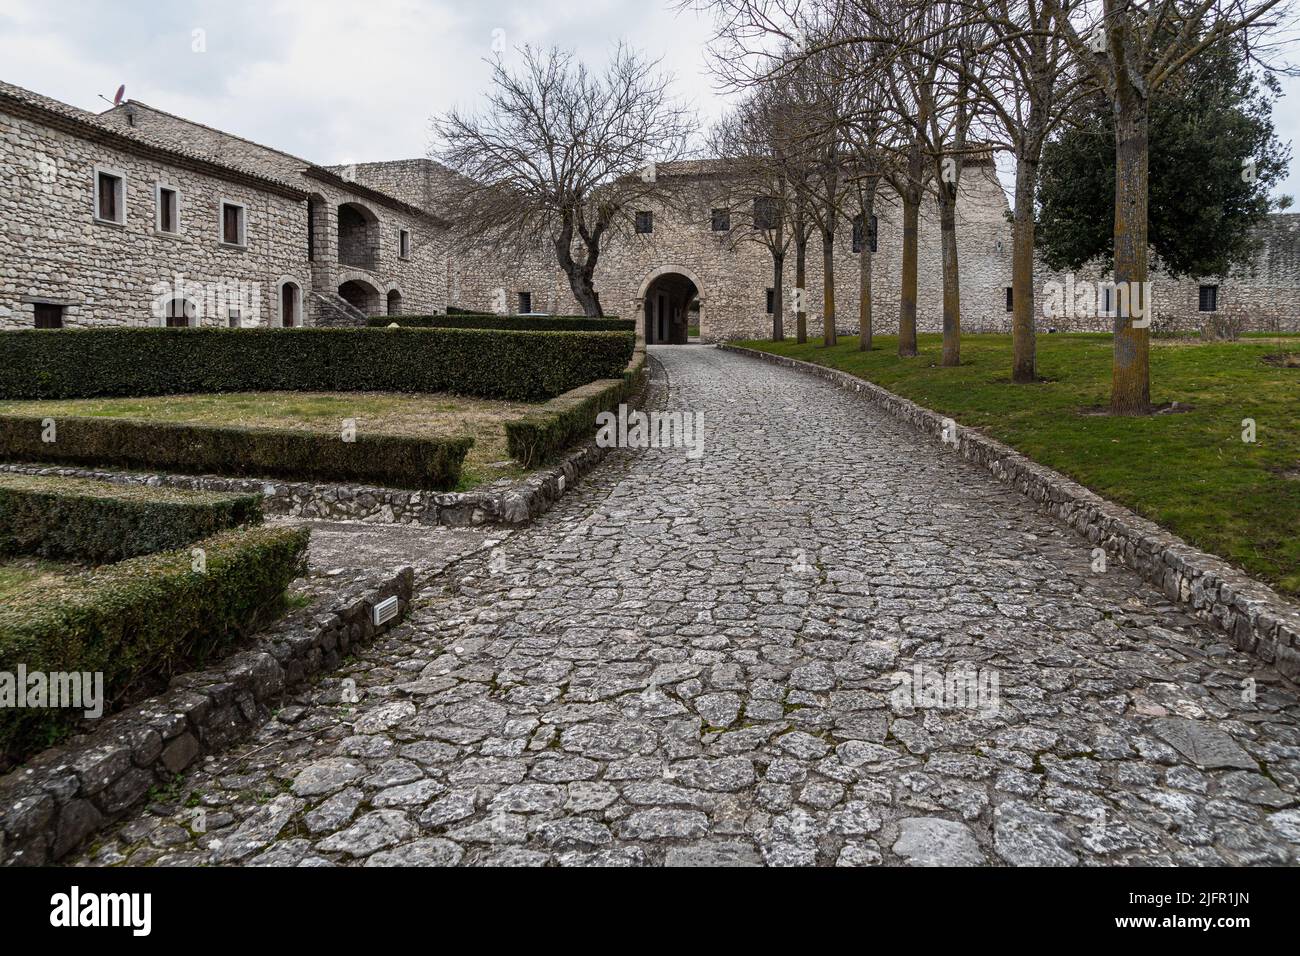 Antica Abbazia medievale del Goleto, abbaziale costruita in stile romanico, Sant'Angelo dei Lombardi, Campania, Italia Foto Stock